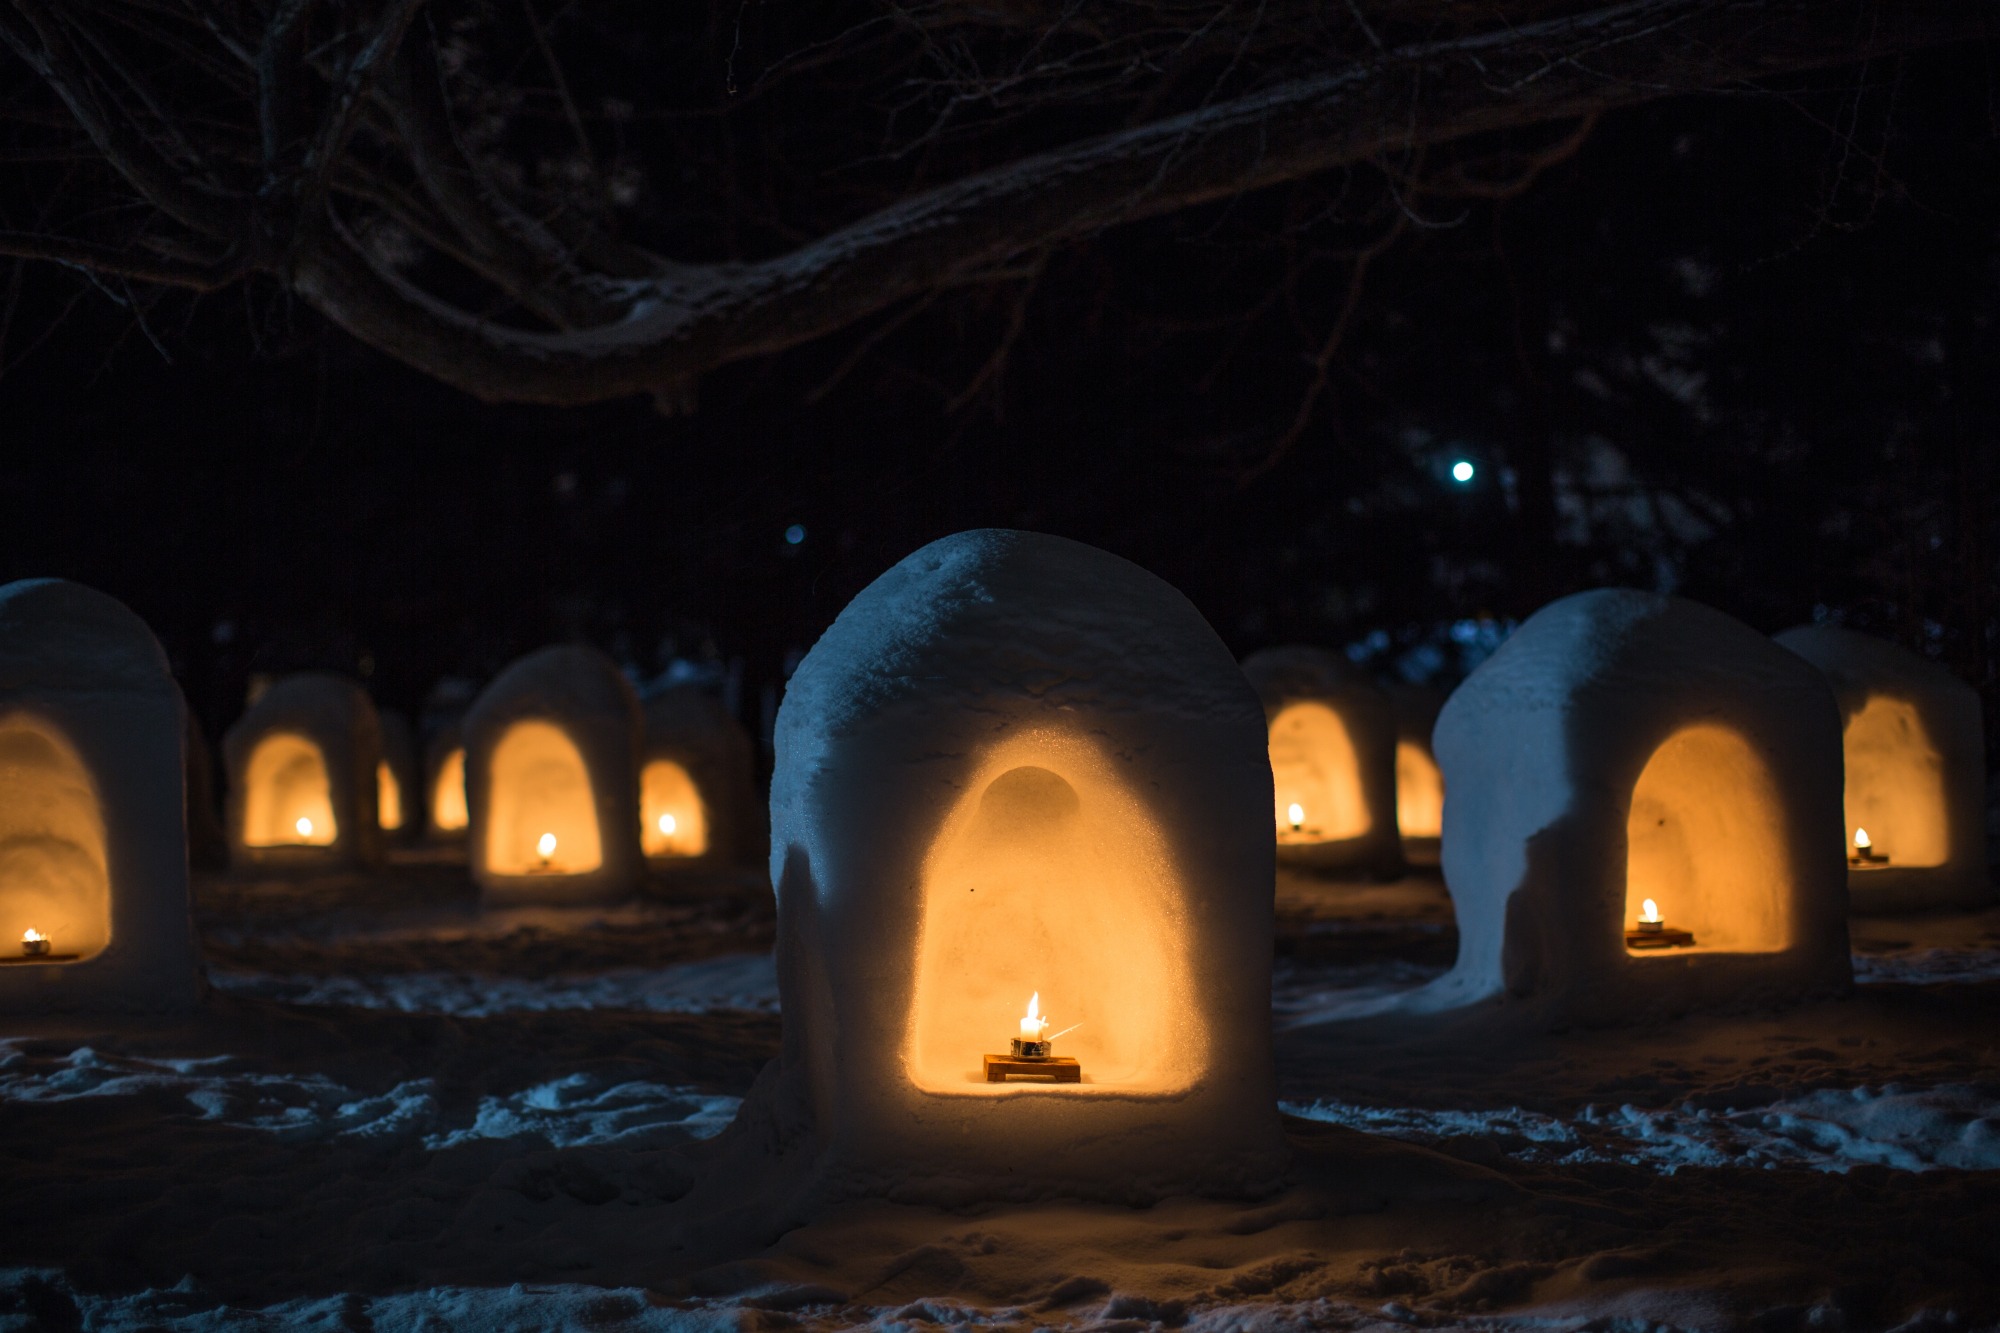 雪化粧した弘前城を囲む燈籠や雪像雪灯りが誘う幽玄の世界へ